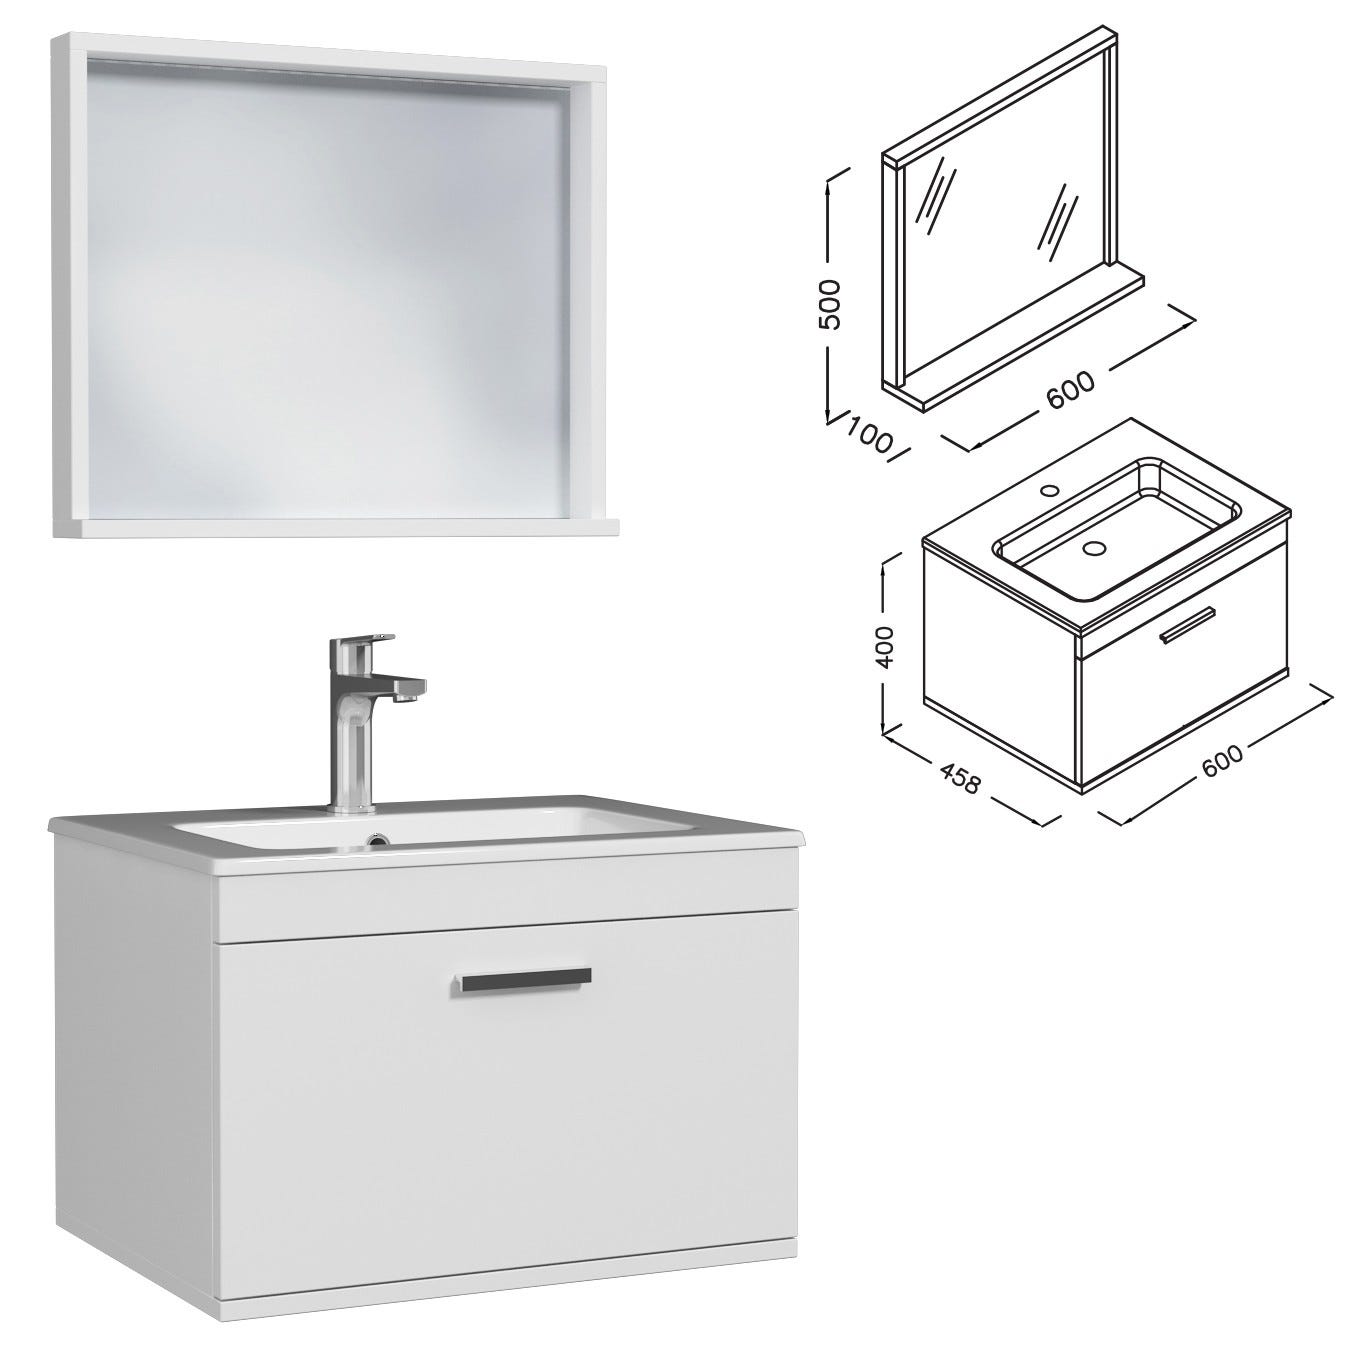 RUBITE Meuble salle de bain simple vasque 1 tiroir blanc largeur 60 cm + miroir cadre 2